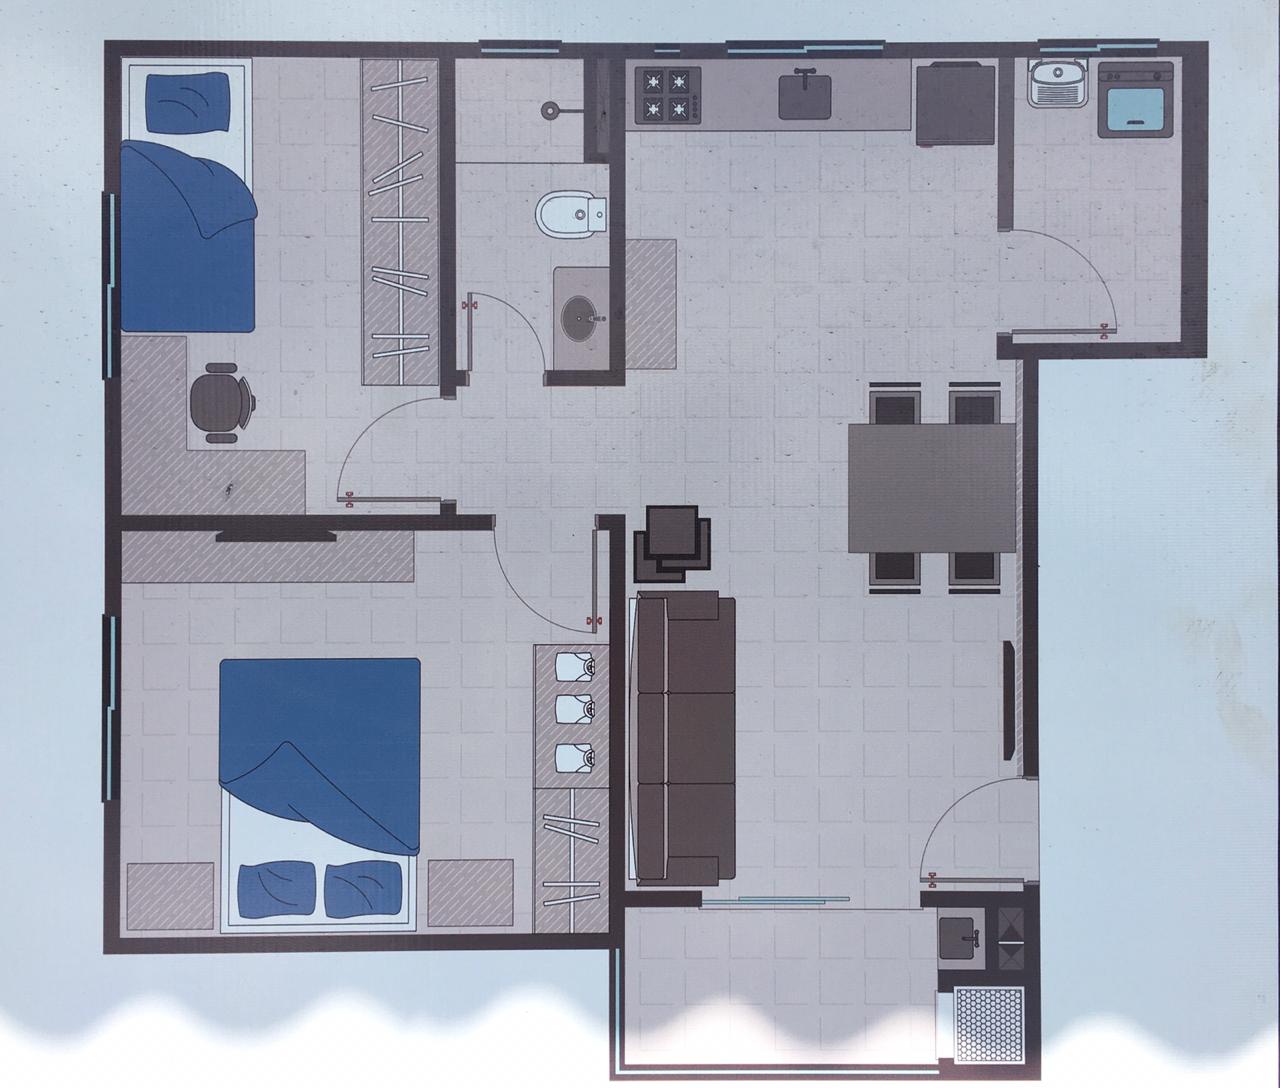 Apartamento – 2 dormitórios – Sacada c/ churrasqueira – Vagas cobertas – Vila Nova